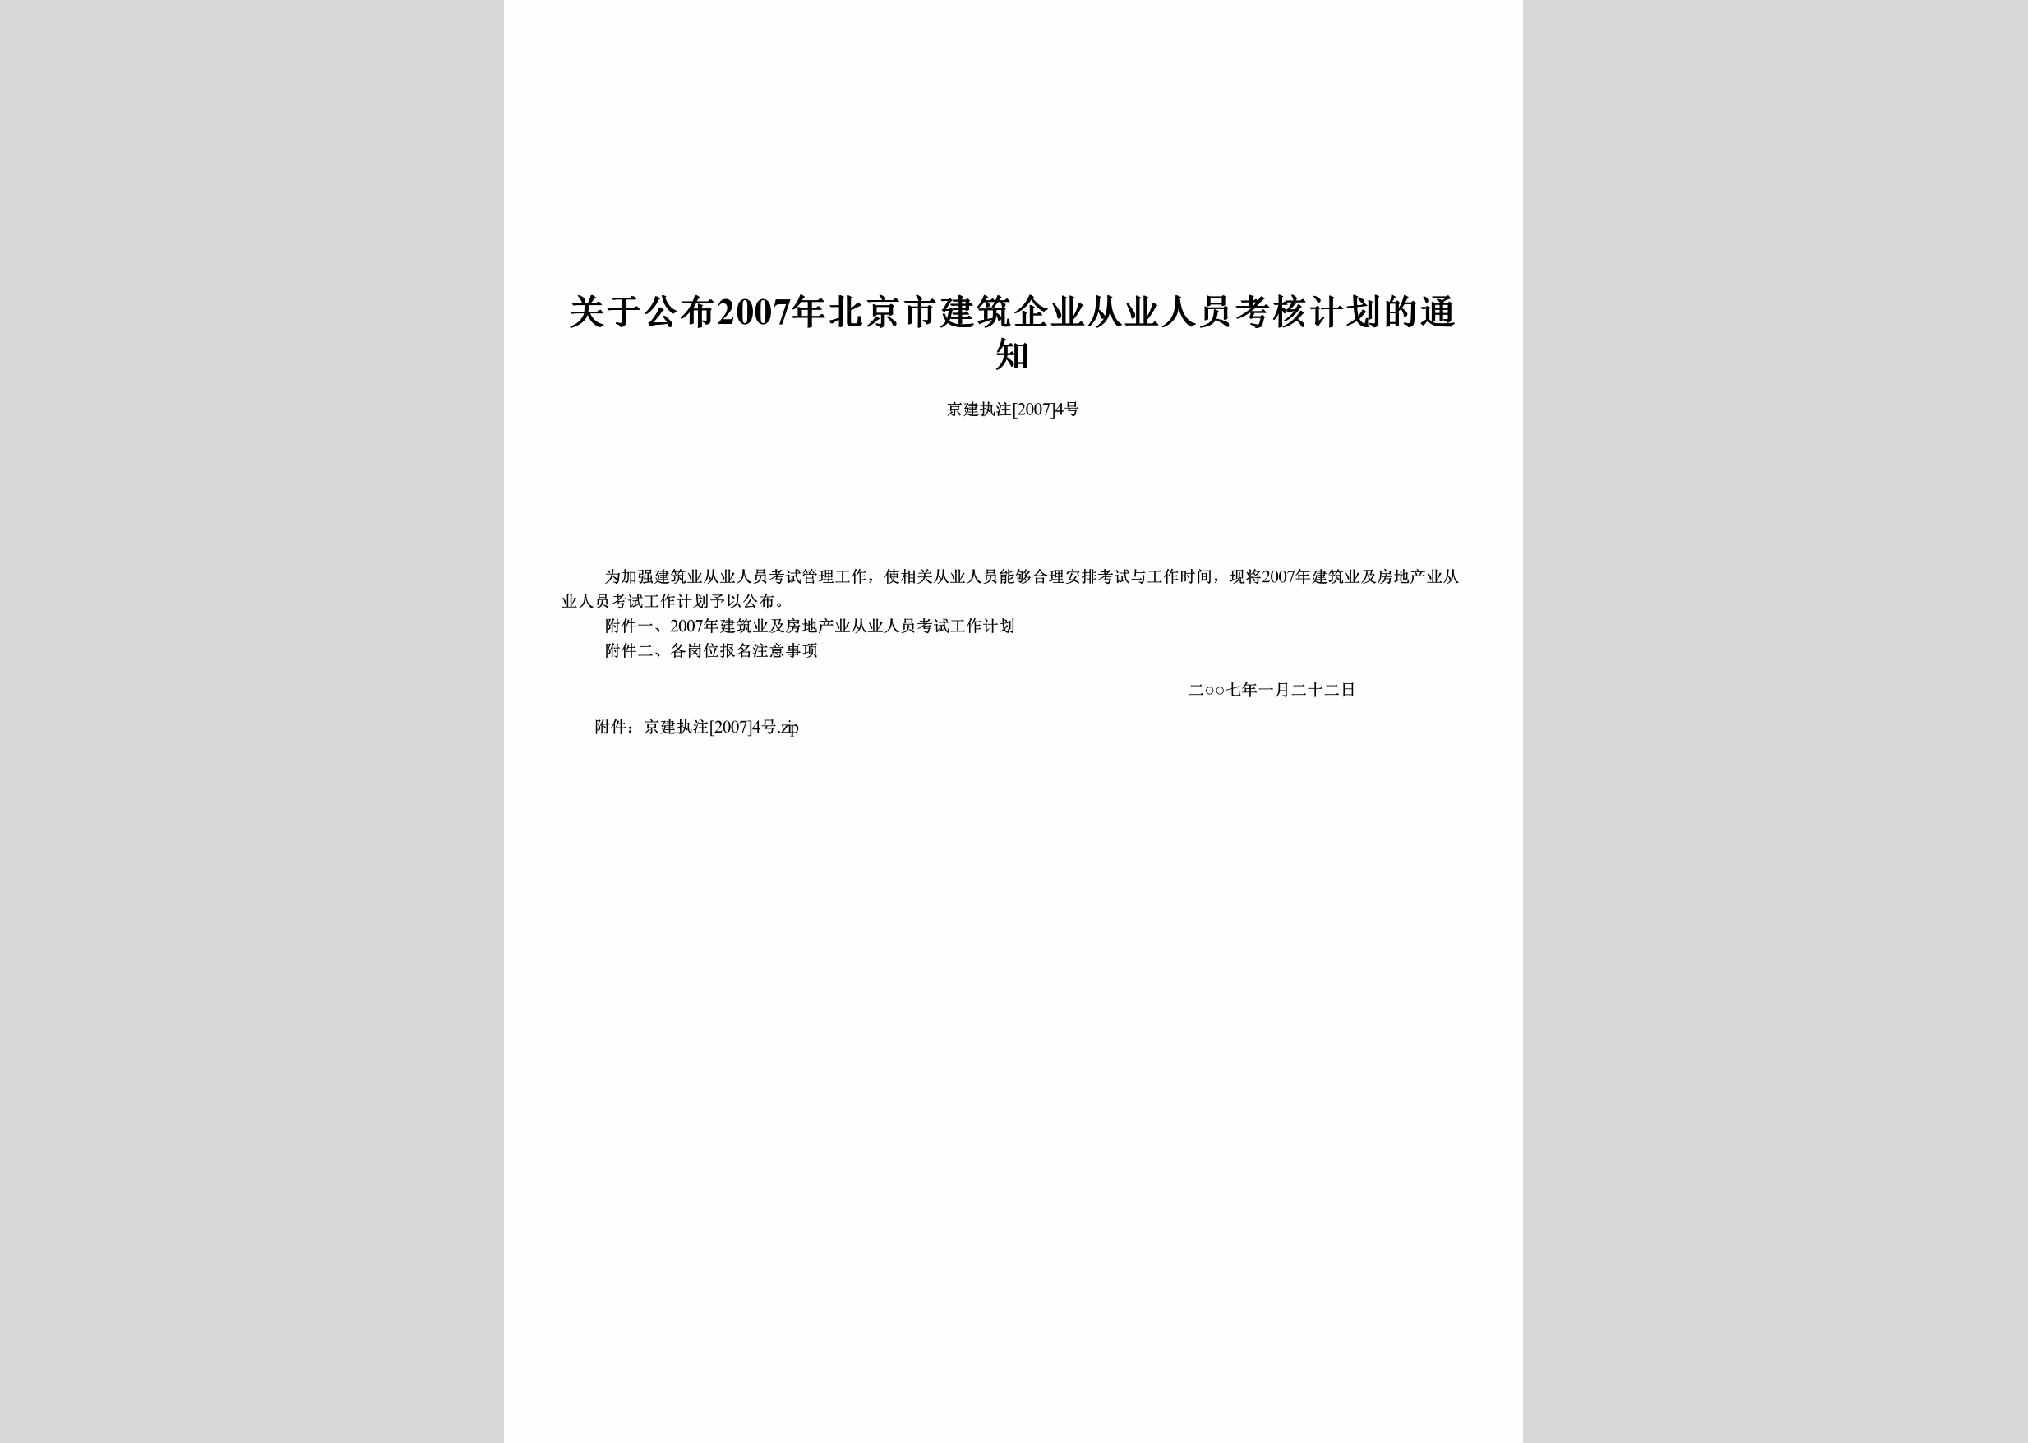 京建执注[2007]4号：关于公布2007年北京市建筑企业从业人员考核计划的通知